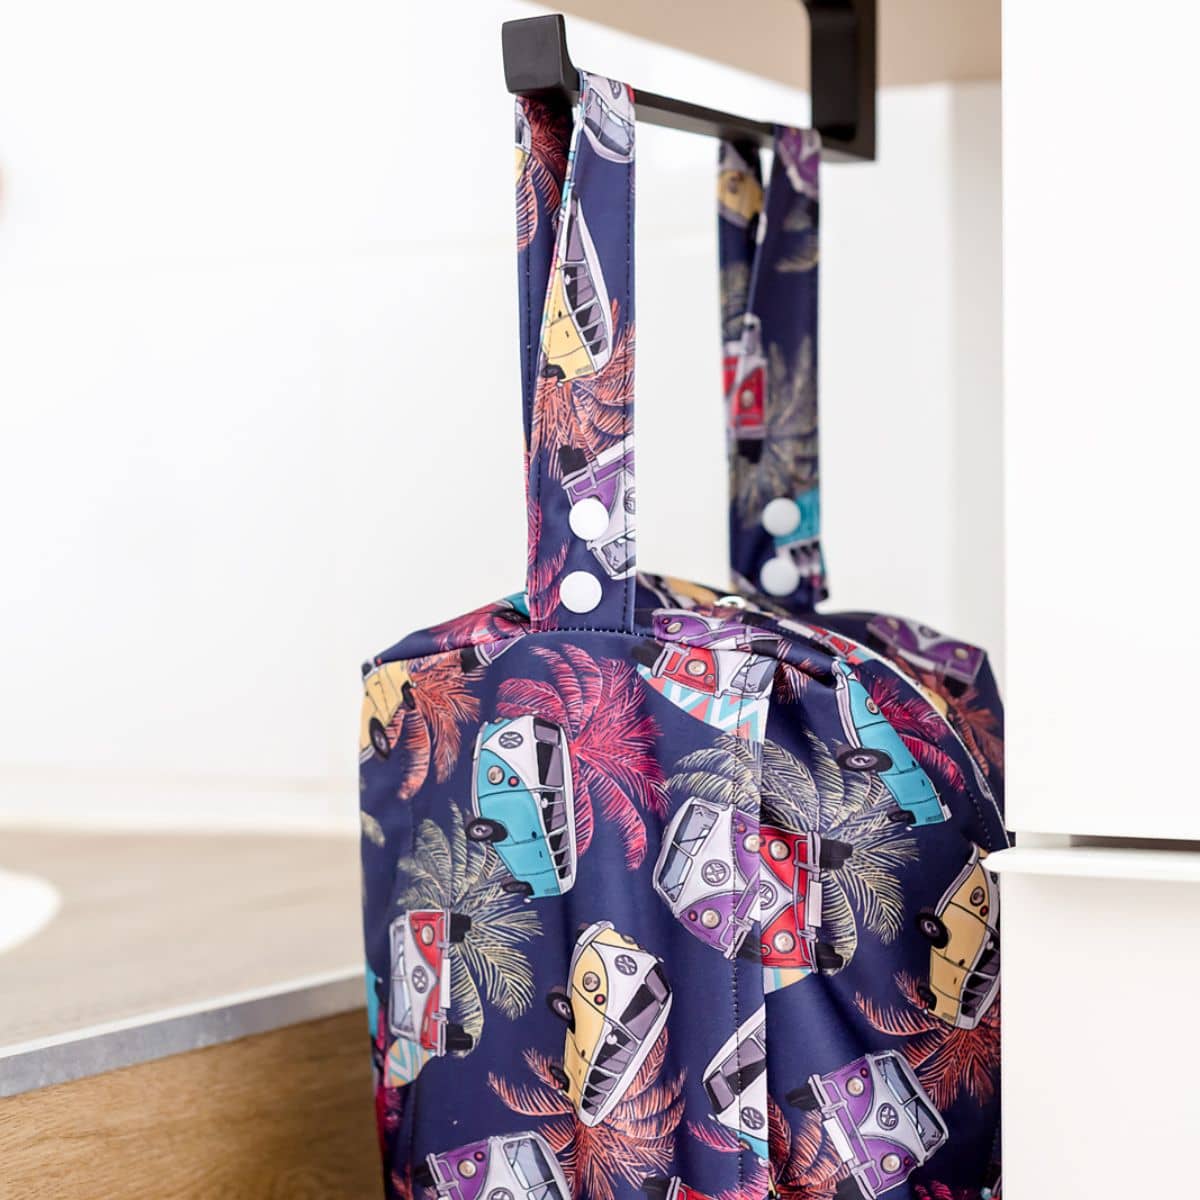 Designer Bums Travel Wet Bag